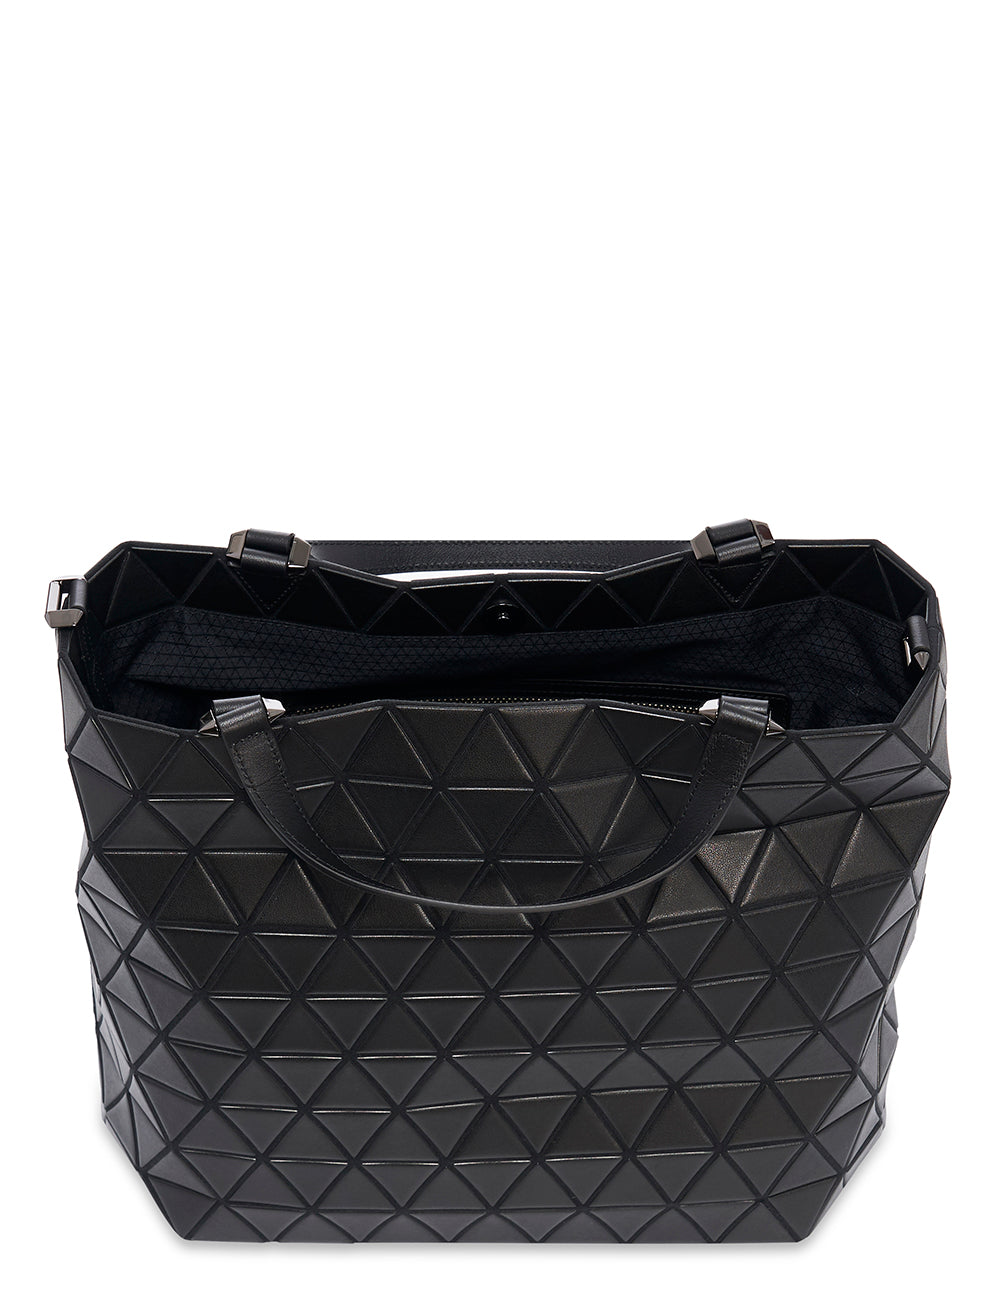 CRYSTAL MATTE Handbag (Small) (Matte Black)